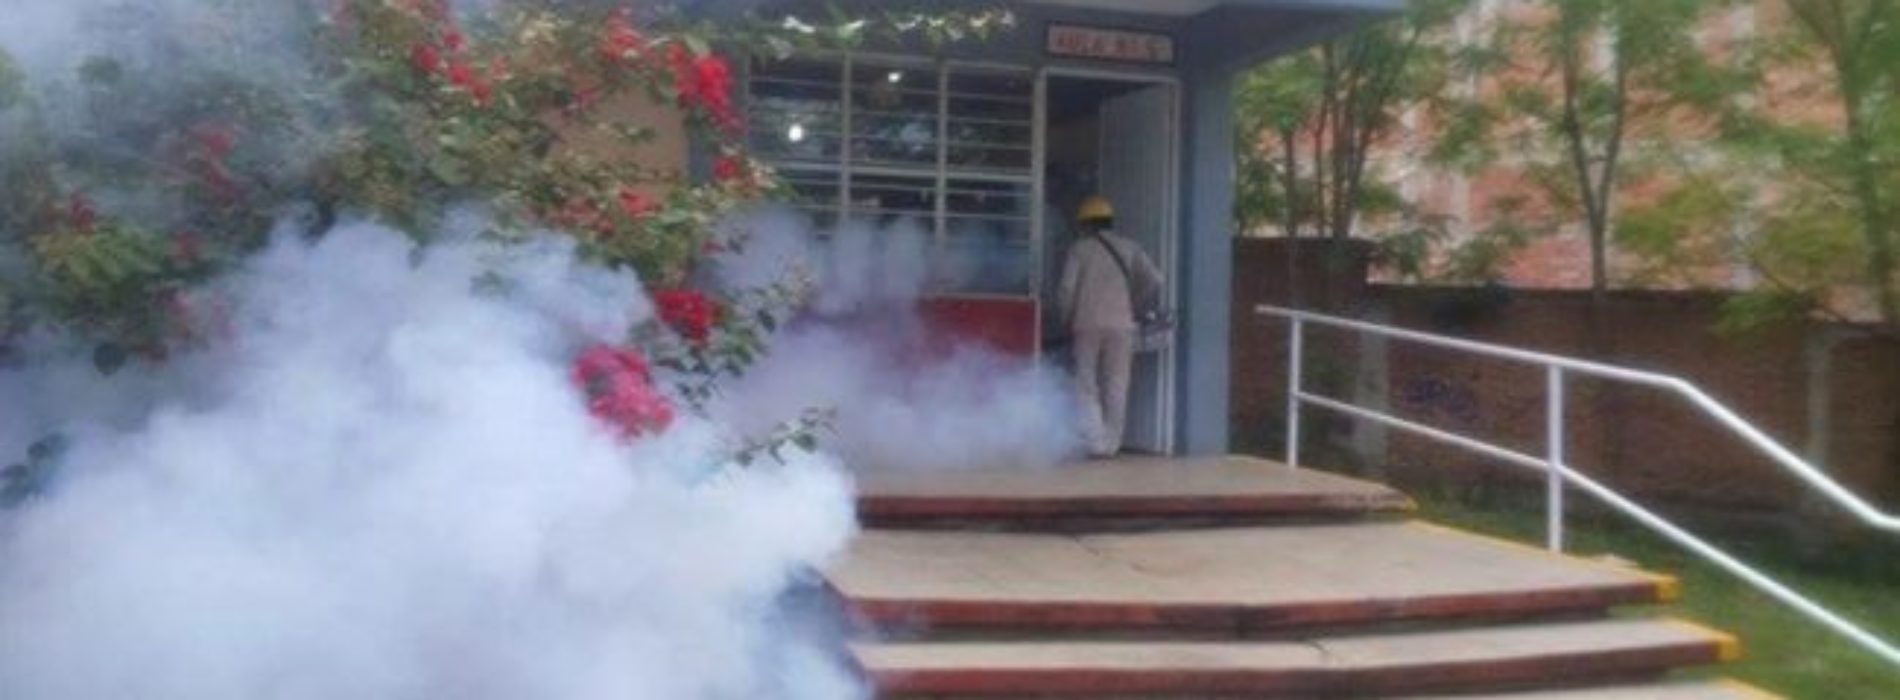 Recomienda IEEPO acciones de prevención del Dengue,
Chikungunya y Zika en escuelas